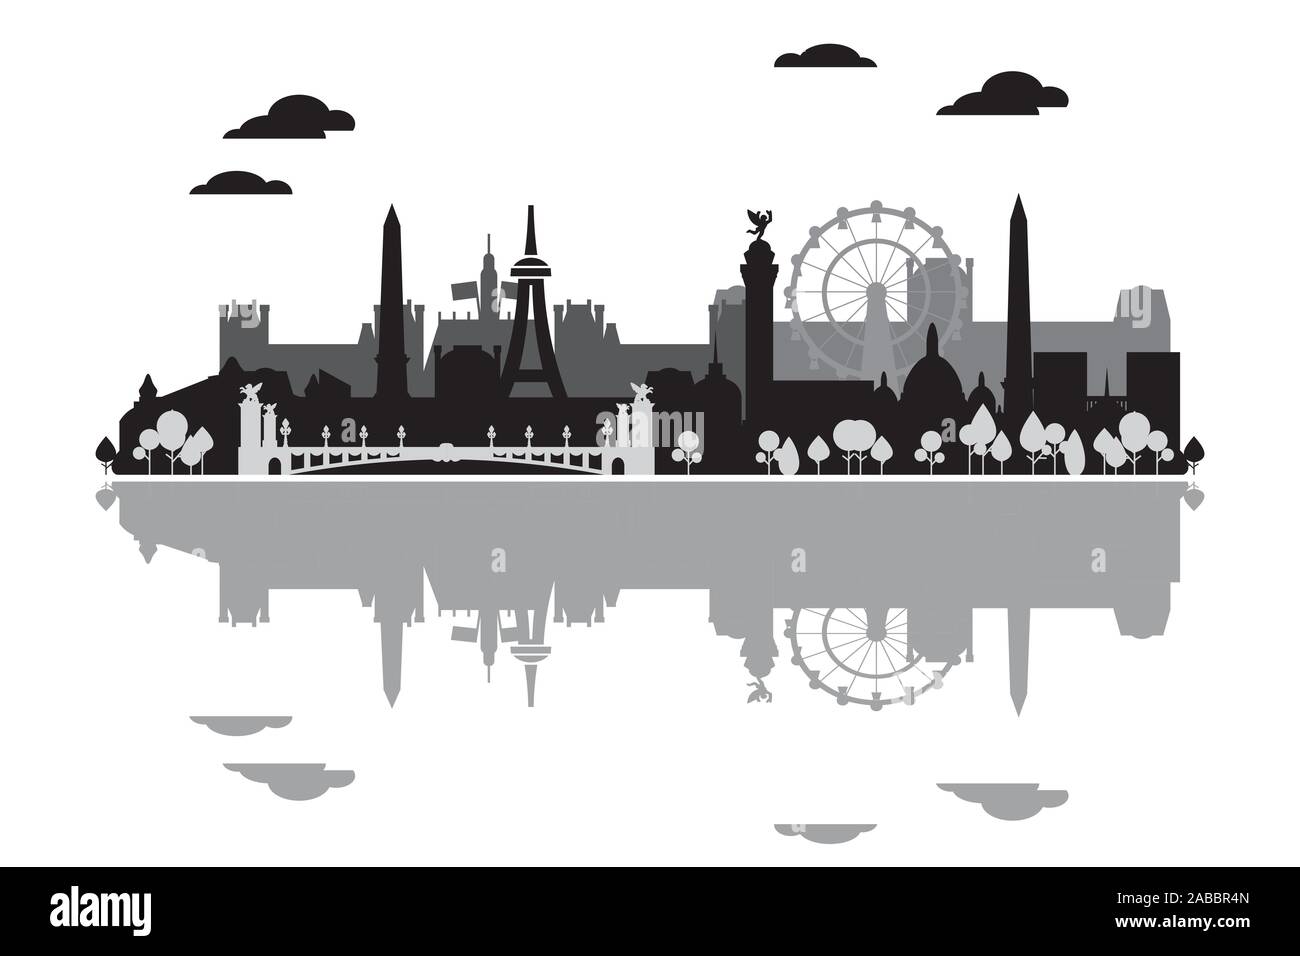 Monochrome Pariser Skyline Silhouette mit Reflexion im Wasser. Vector Illustration in schwarzen und grauen Farben auf weißem Hintergrund. Panoramablick vec Stock Vektor